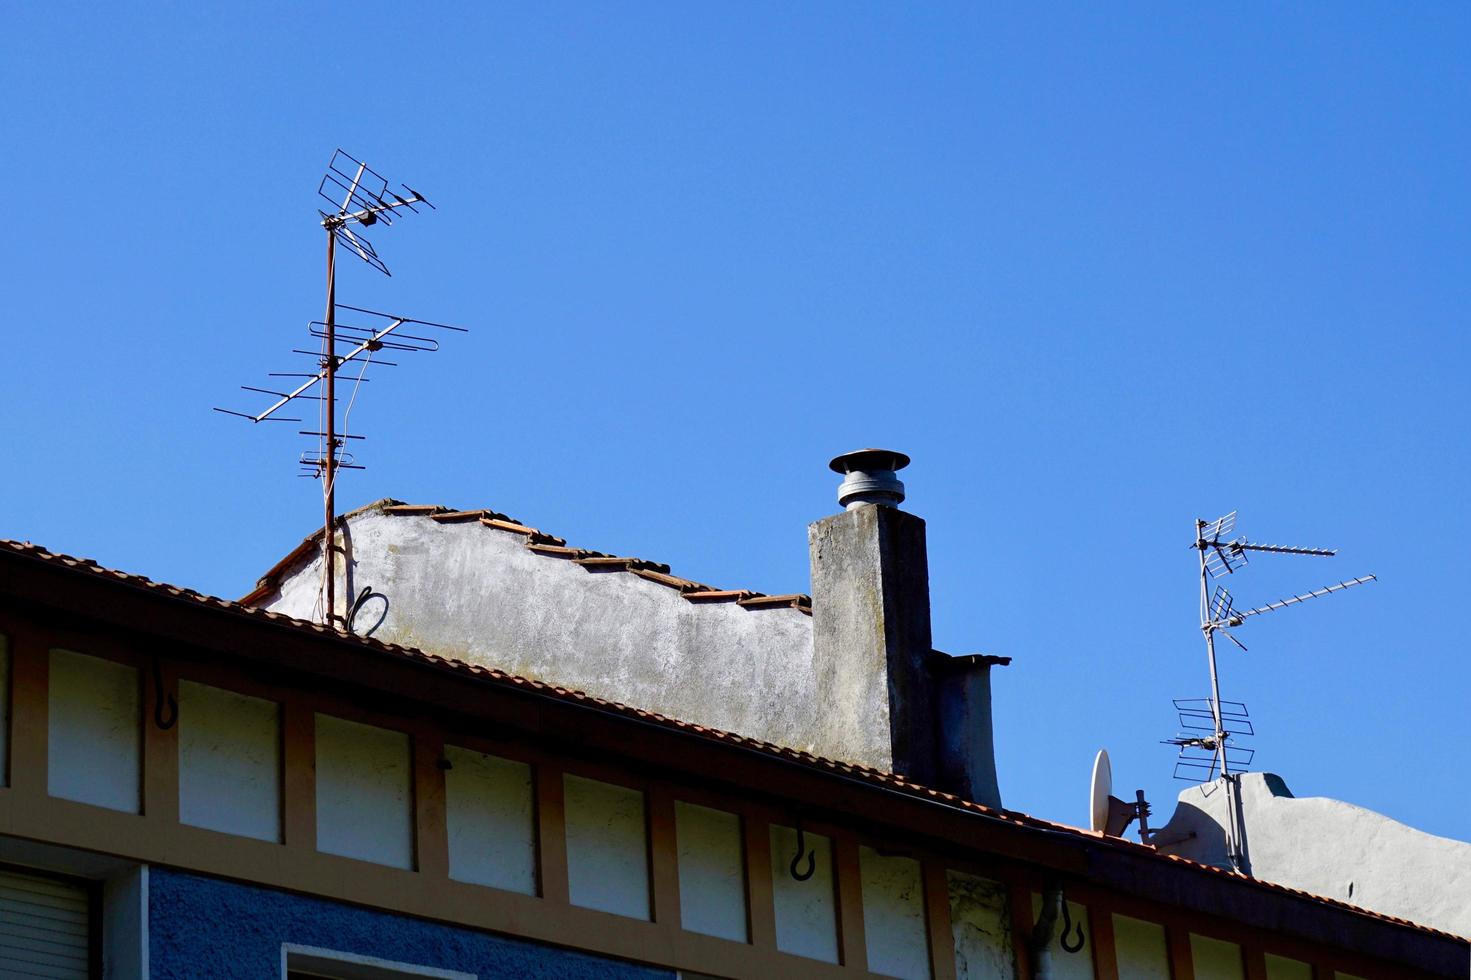 antena de tv en la azotea de una casa foto